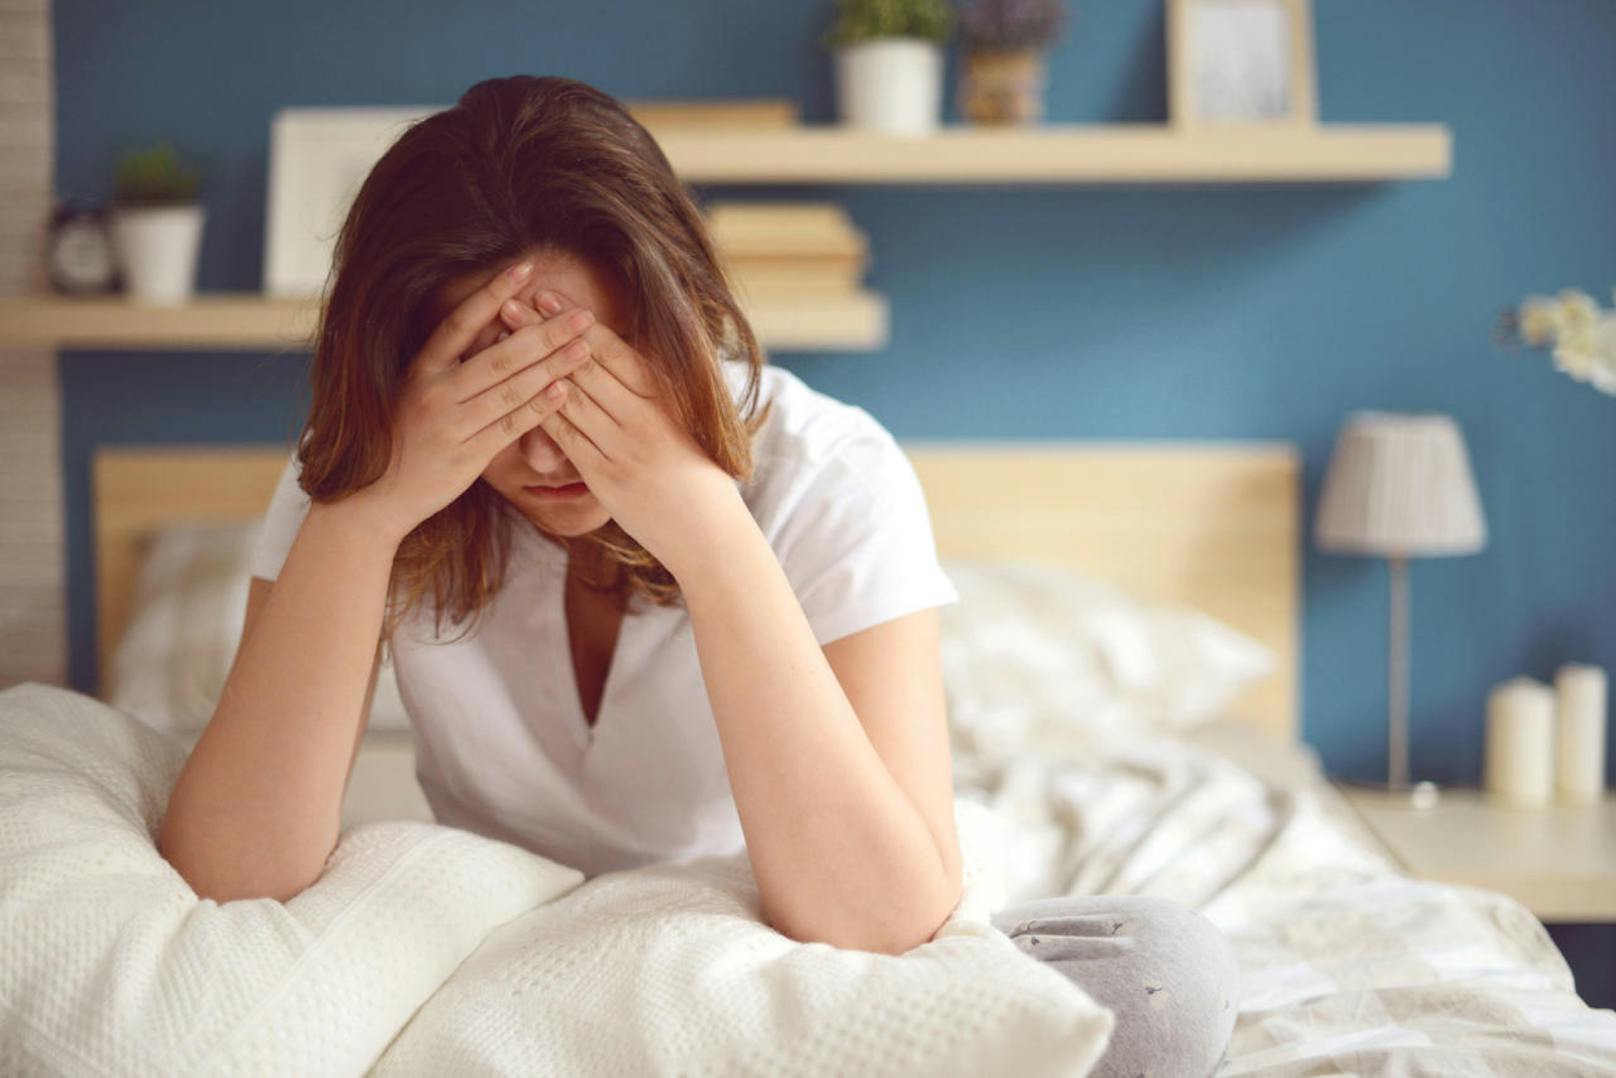 Wer zu wenig schläft, ist laut Forschern der Harvard Medical School in Boston deutlich schmerzempfindlicher. Selbst Schmerzmittel wie Ibuprofen sind gegen die durch den Schlafmangel ausgelöste Überempfindlichkeit machtlos.